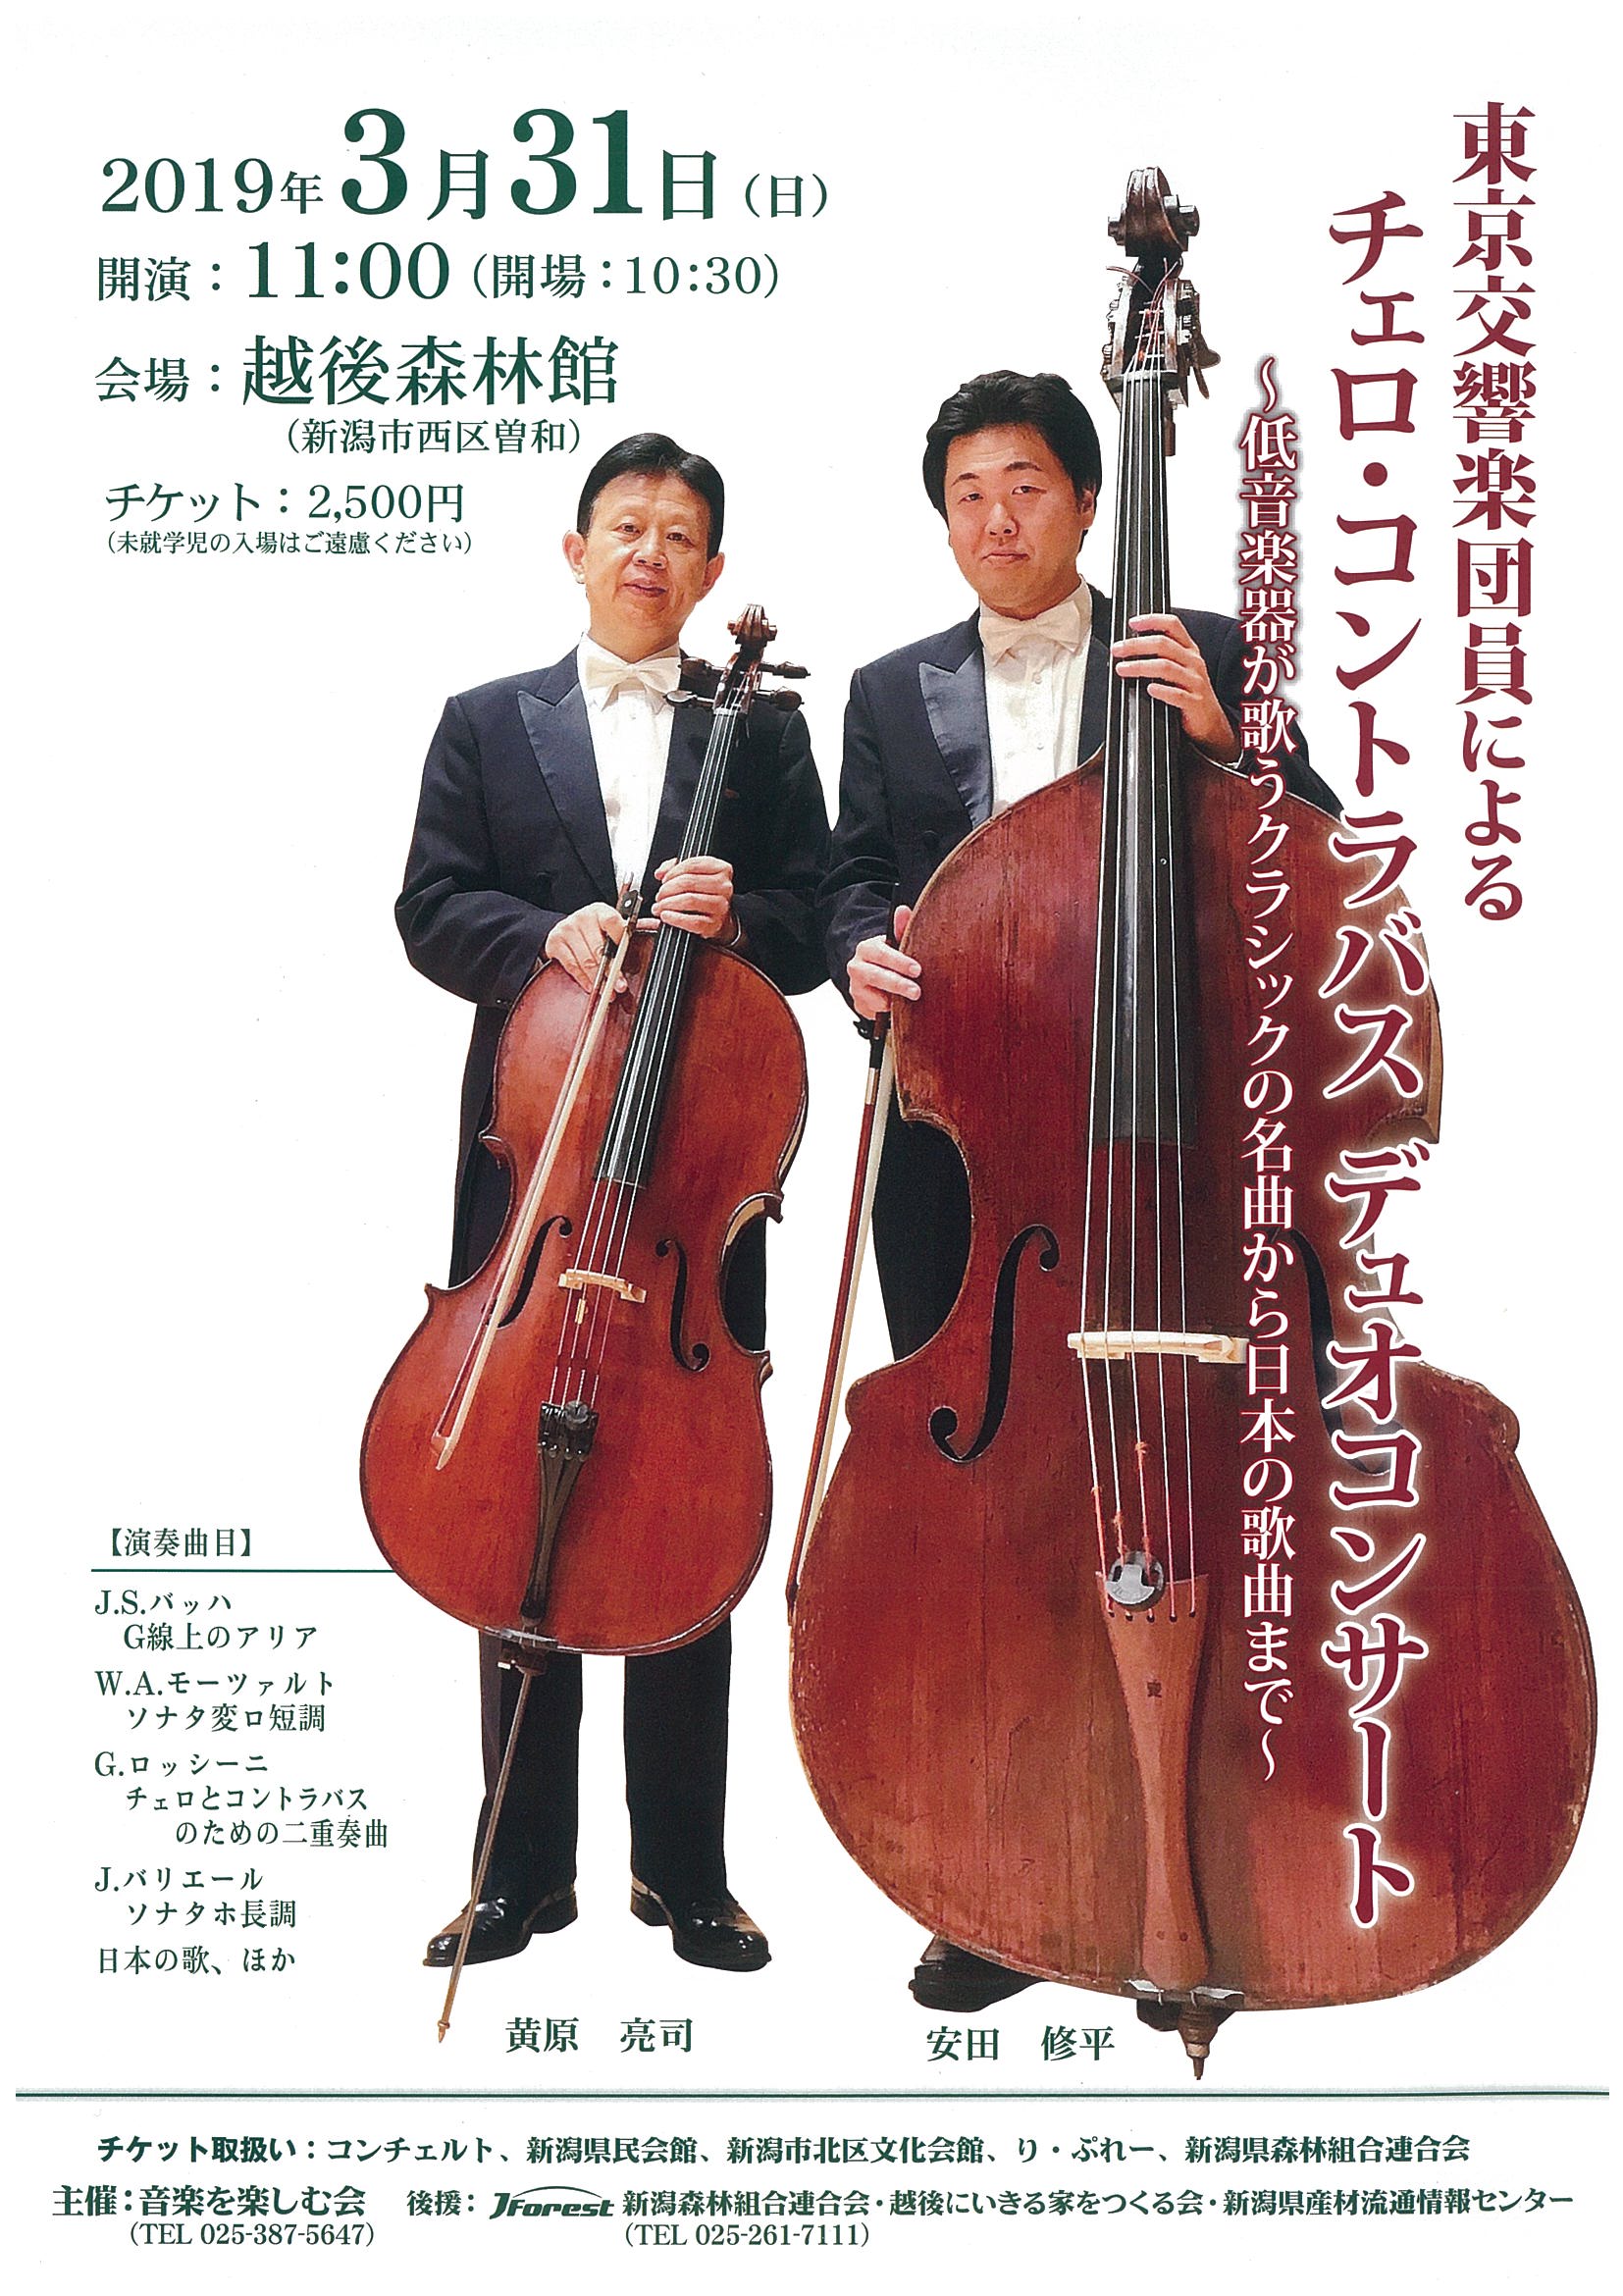 東京交響楽団員によるチェロ コントラバス デュオコンサートが開催されます 新潟県森林組合連合会